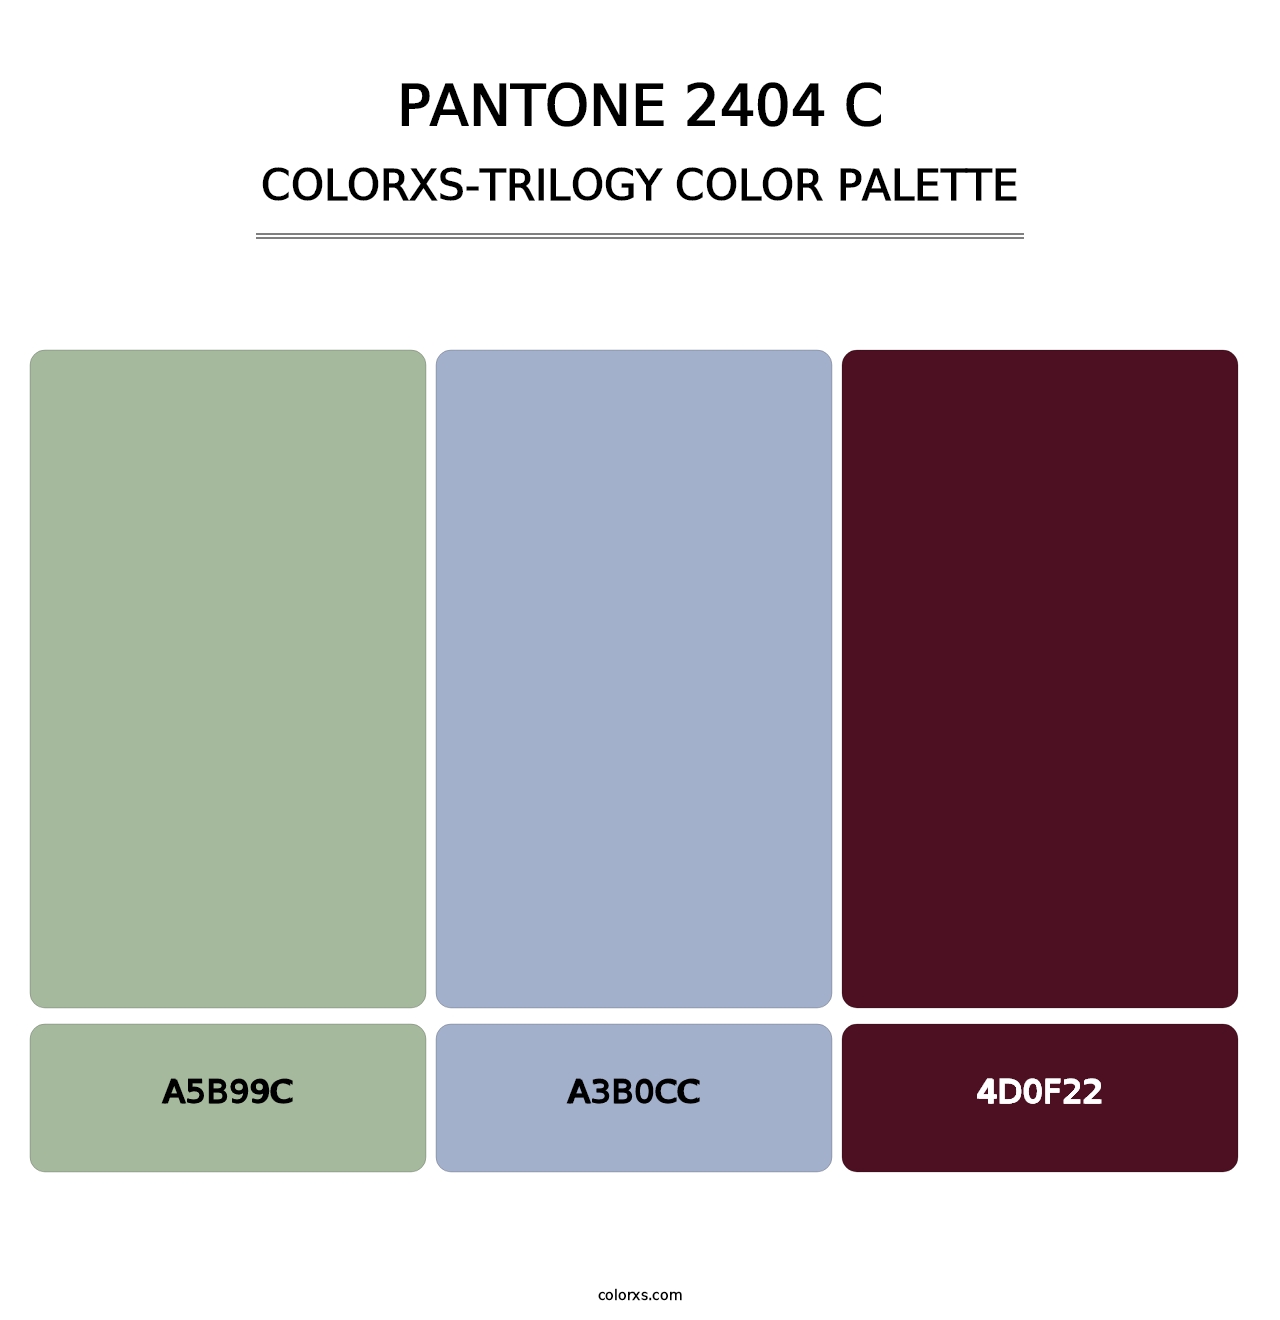 PANTONE 2404 C - Colorxs Trilogy Palette